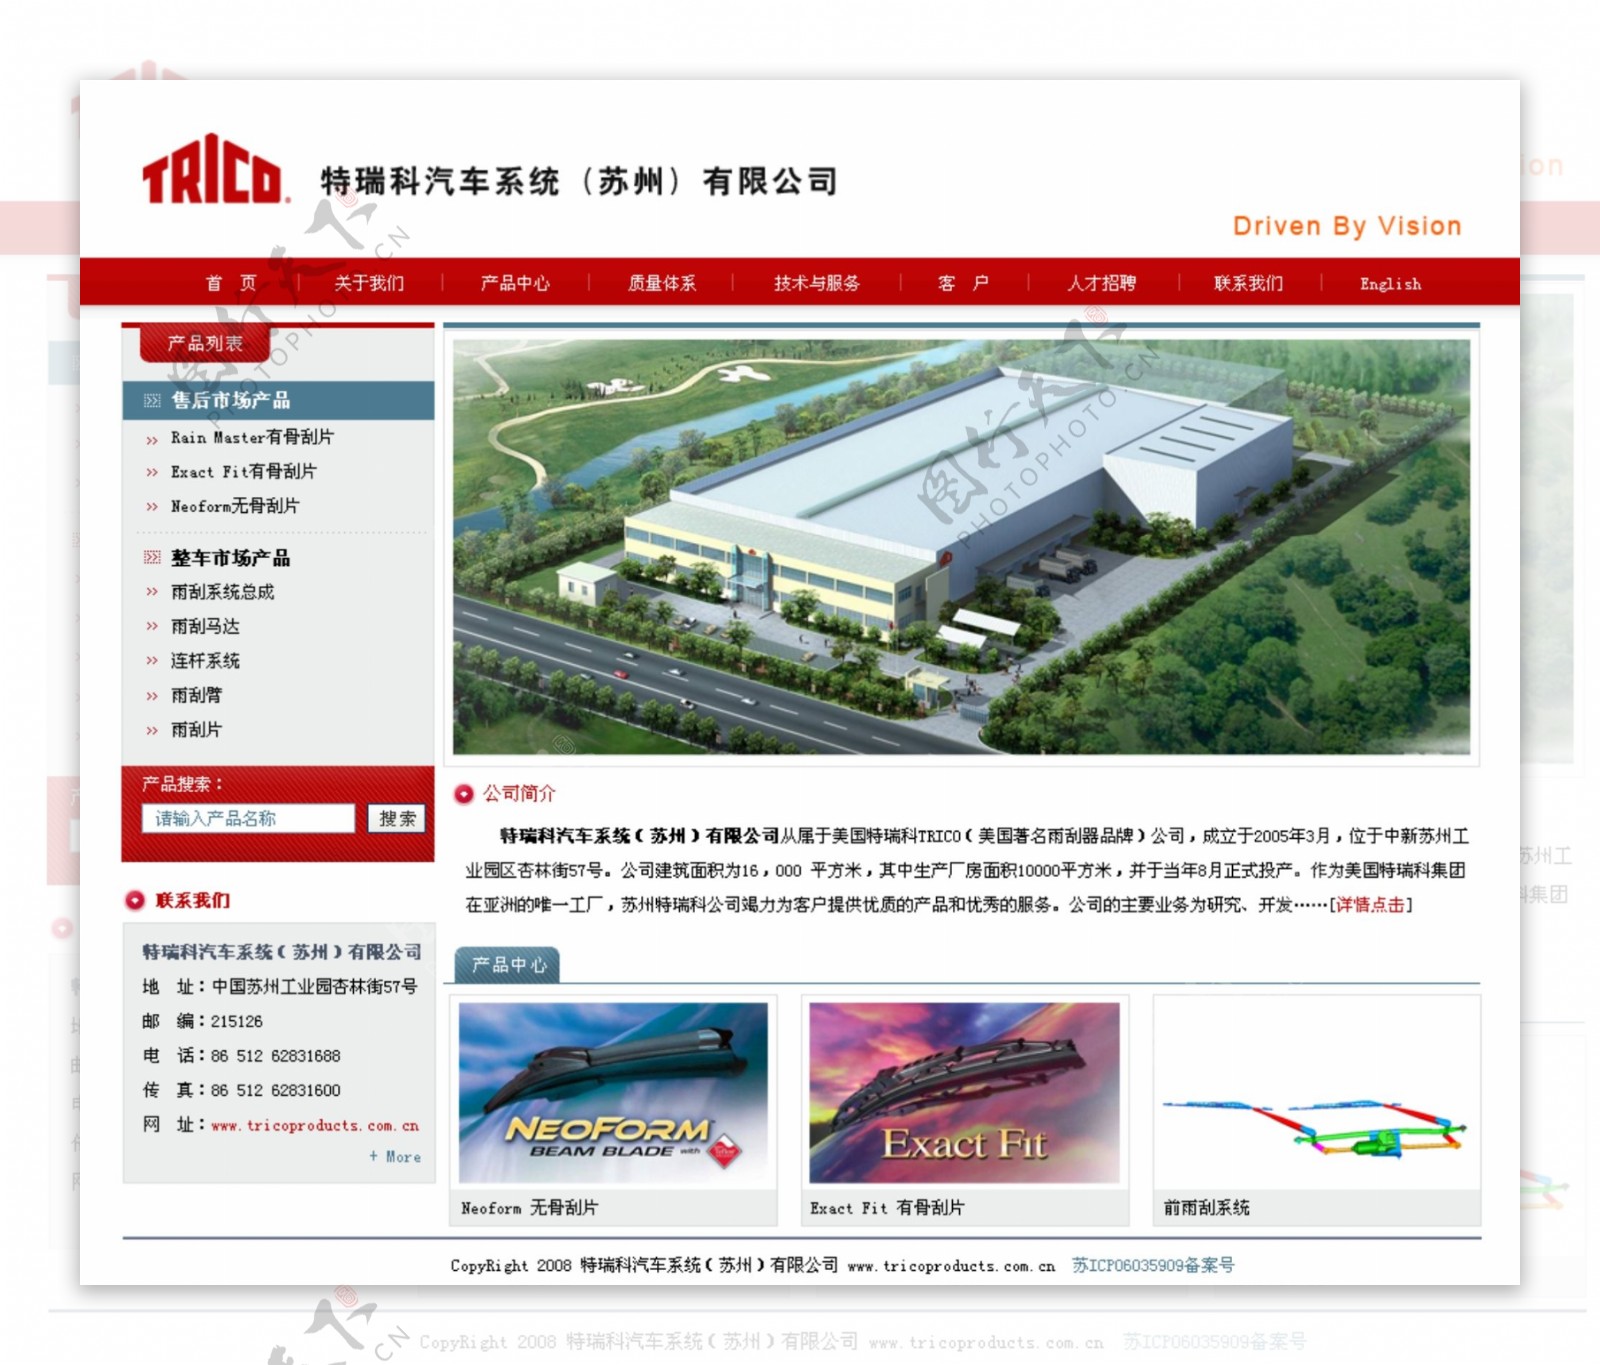 江苏某汽车系统公司网页模板图片